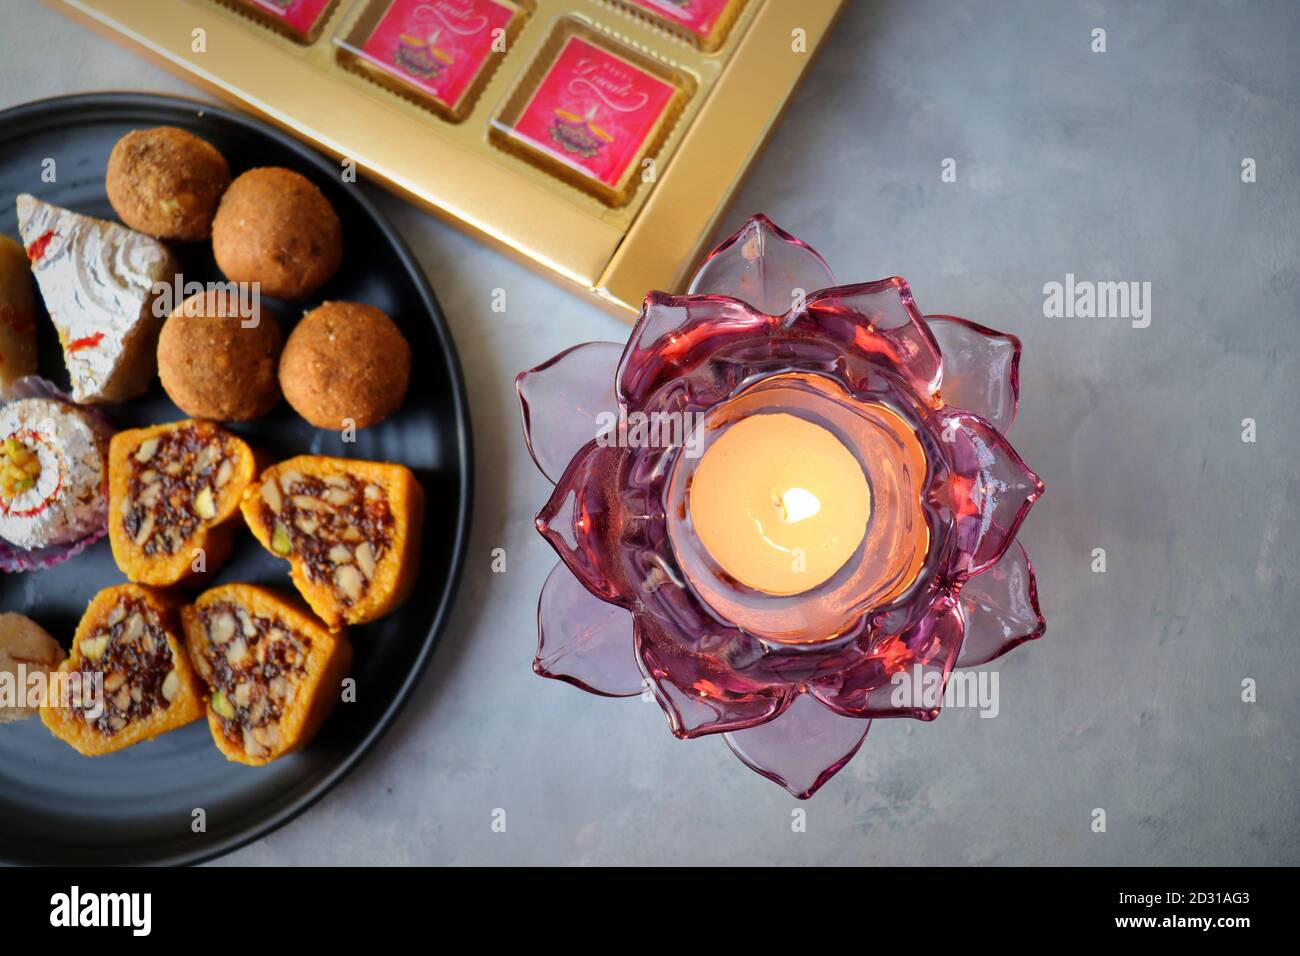 Verschiedene indische Süßigkeiten oder Mithai, Rava laddoo, Besan laddu, Trockenfrüchte Süßigkeiten in einem schwarzen Teller zusammen mit Happy Diwali Schokolade für Diwali Festival. Stockfoto